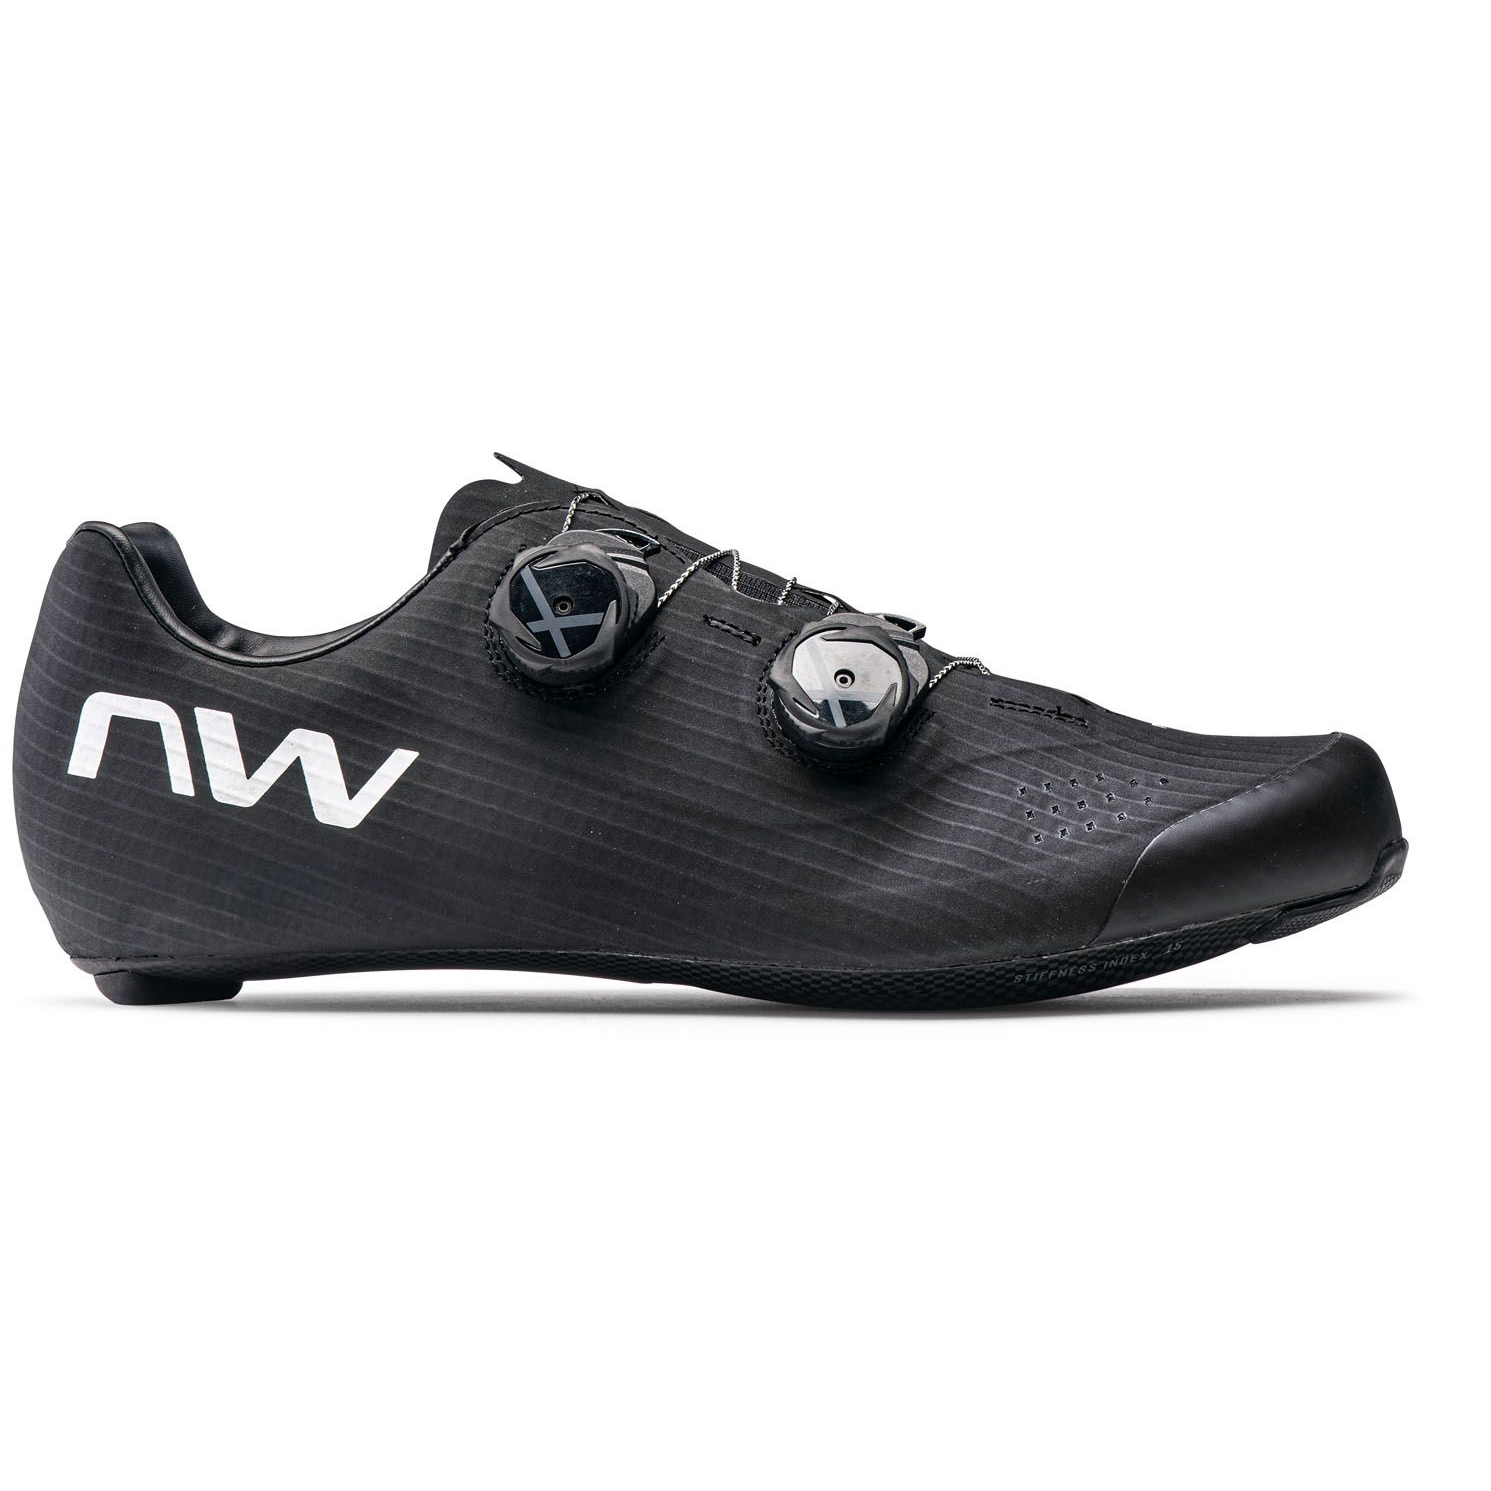 Produktbild von Northwave Extreme Pro 3 Rennradschuhe - schwarz/weiß 11